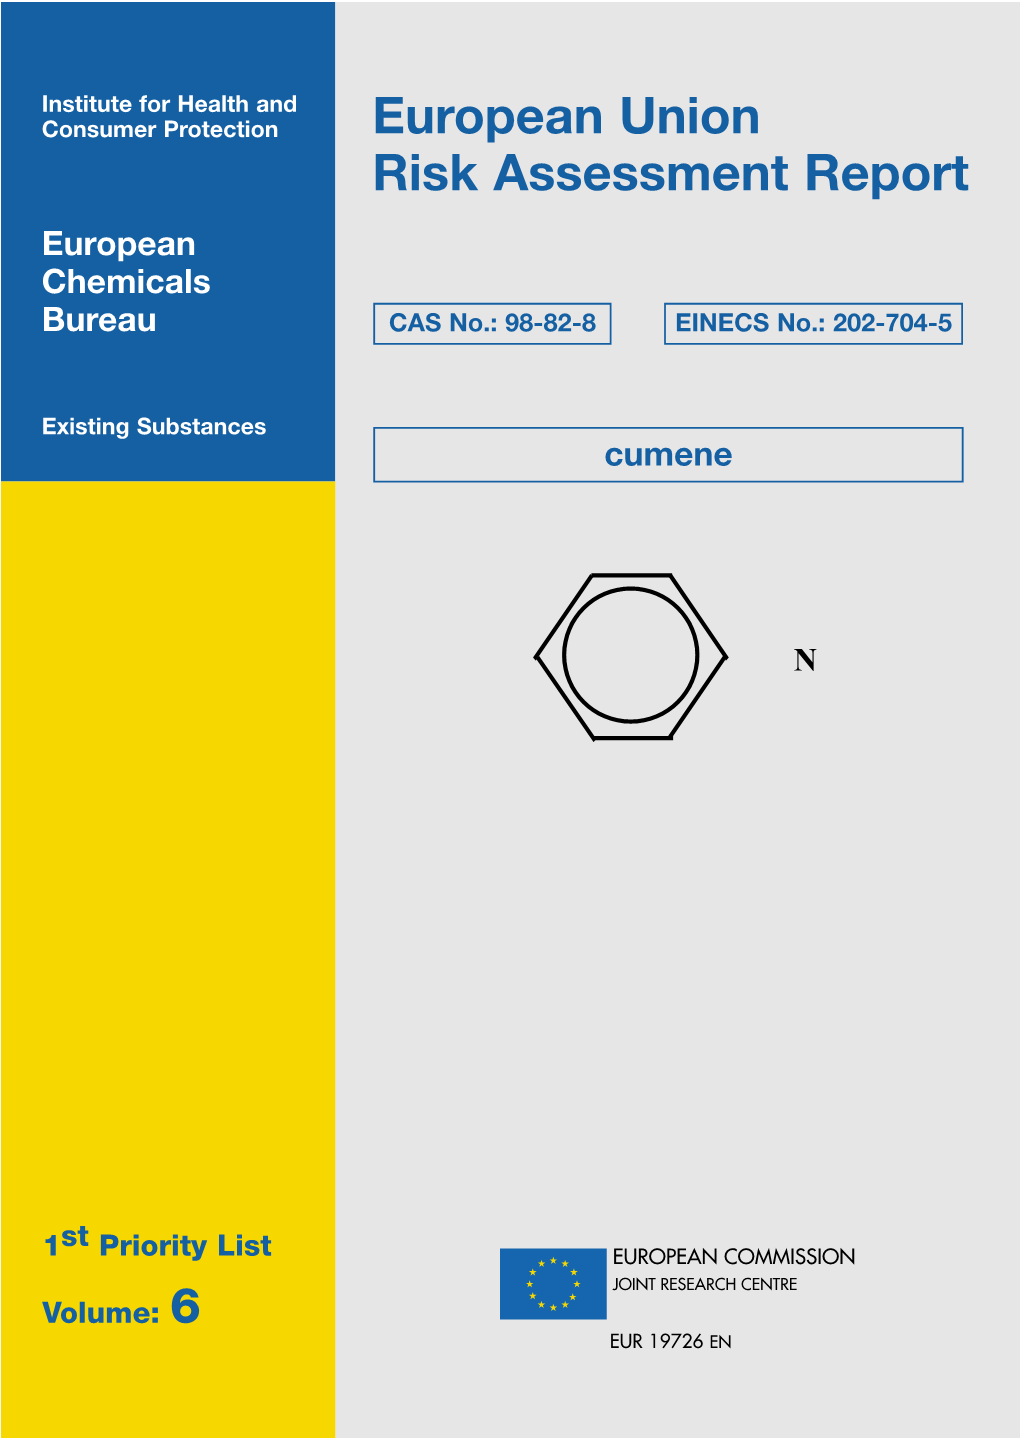 European Union Risk Assessment Report: Cumene